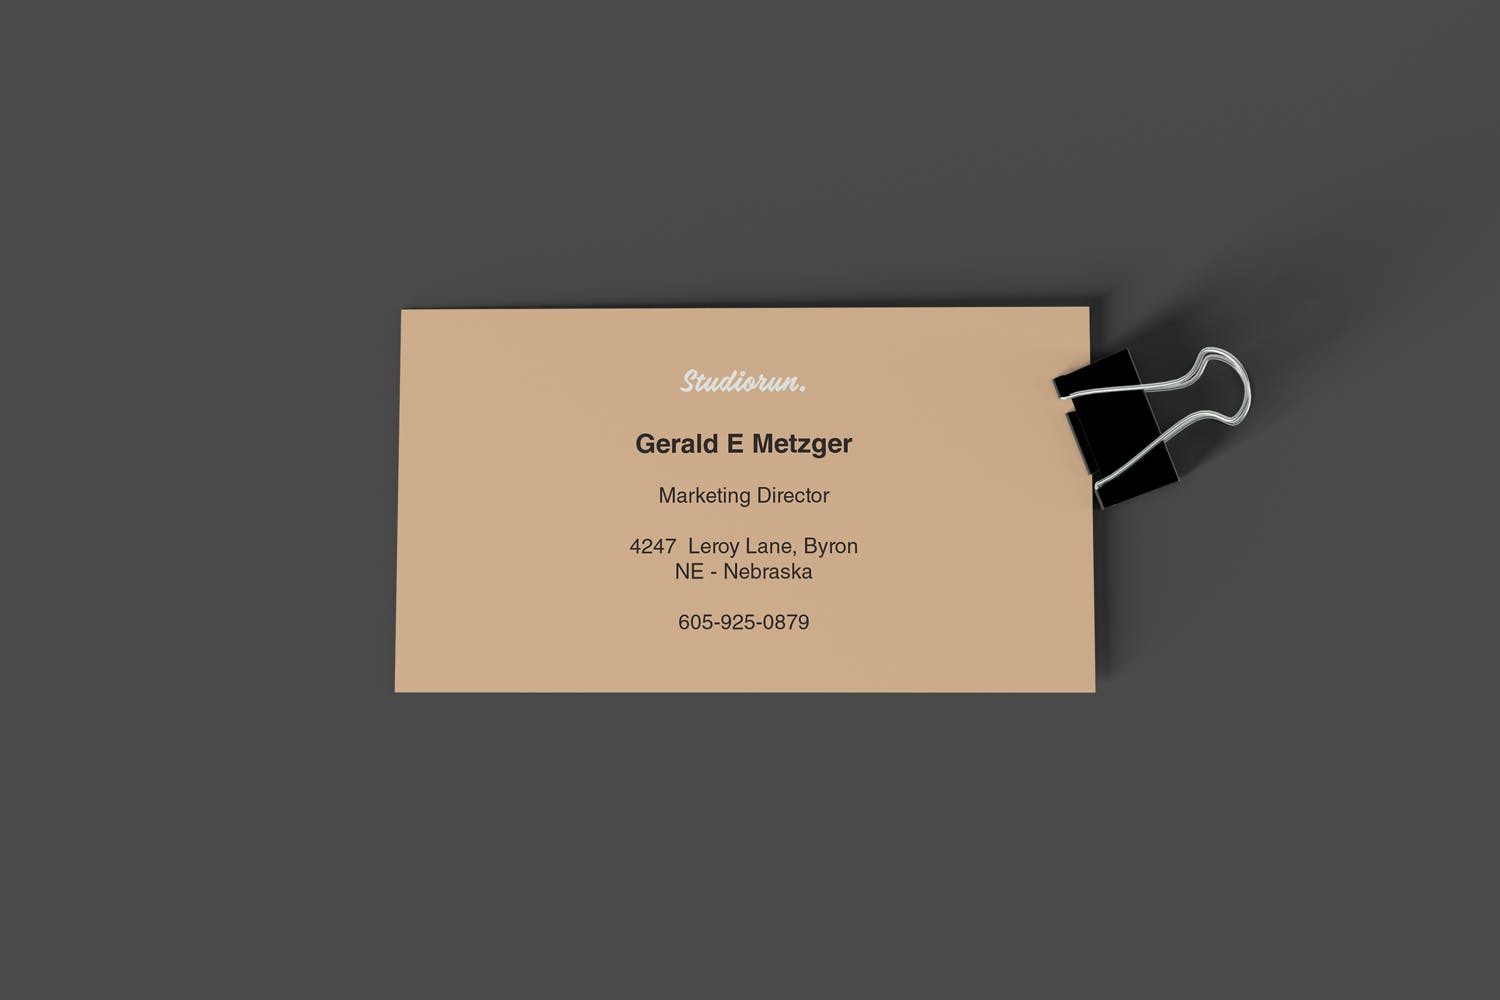 牛皮纸名片版式设计图第一素材精选 Business Card Mockups插图(2)